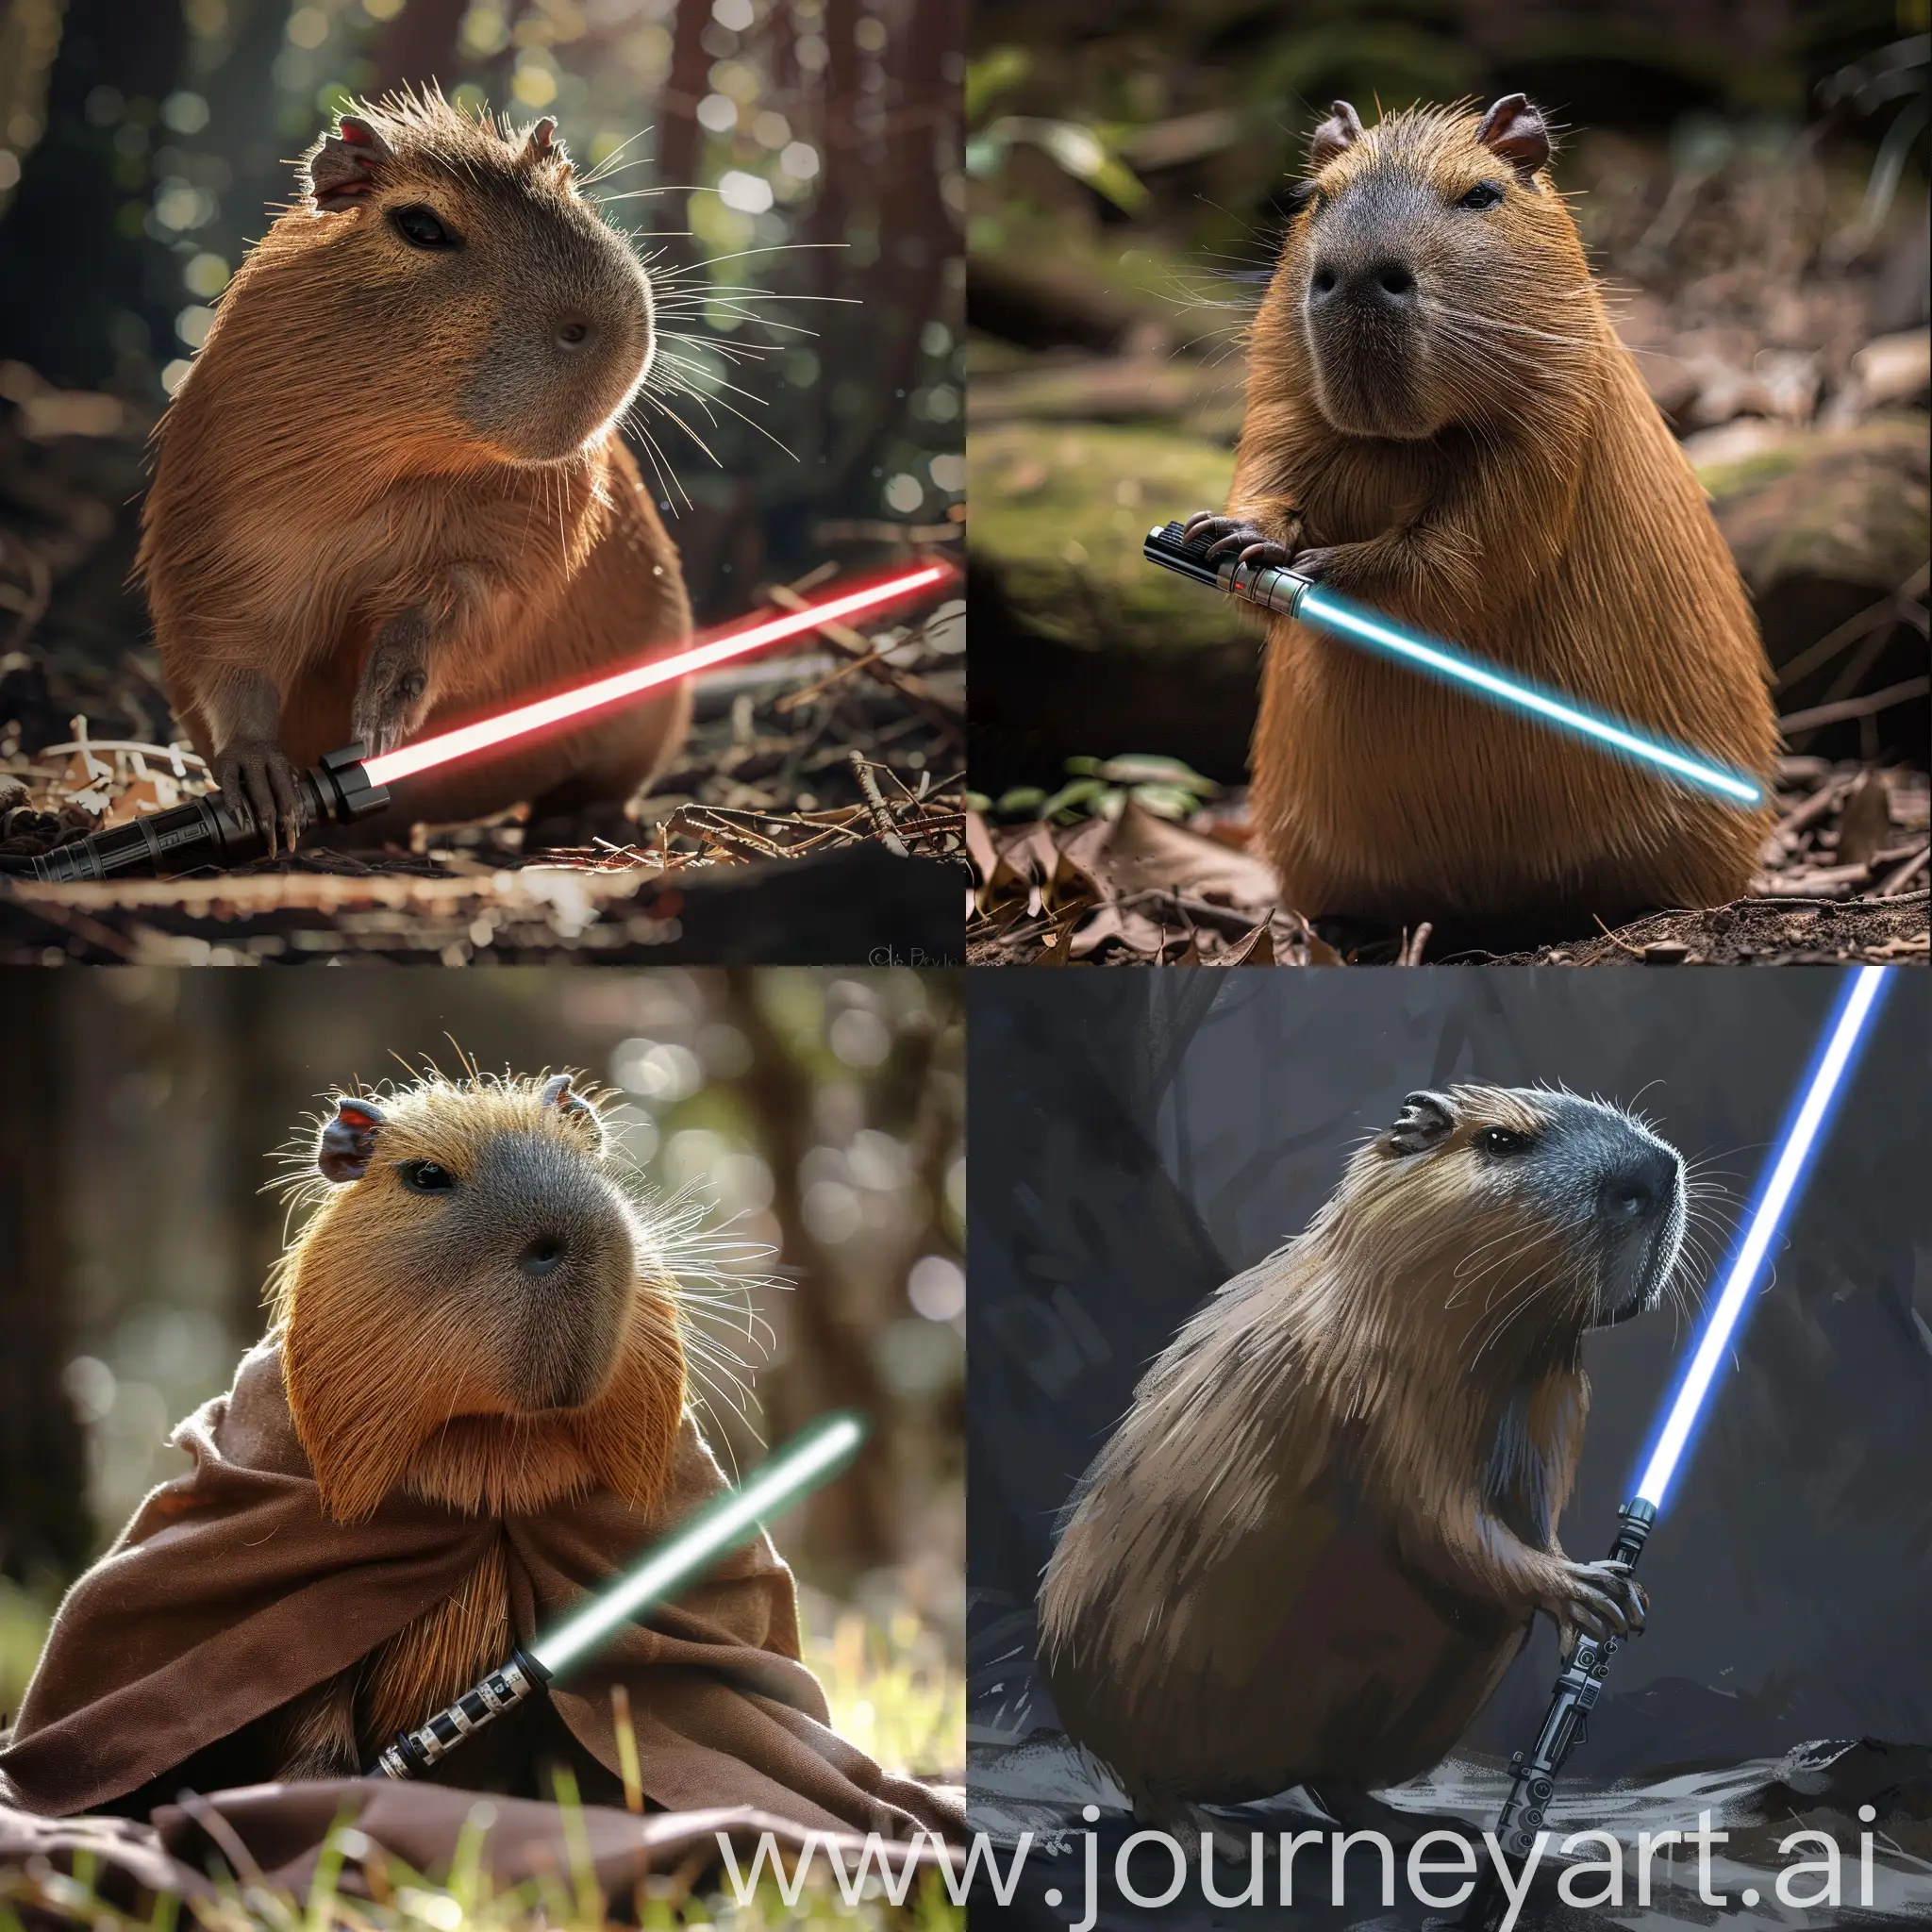 Jedi-Capybara-Playful-Rodent-Wielding-Lightsaber